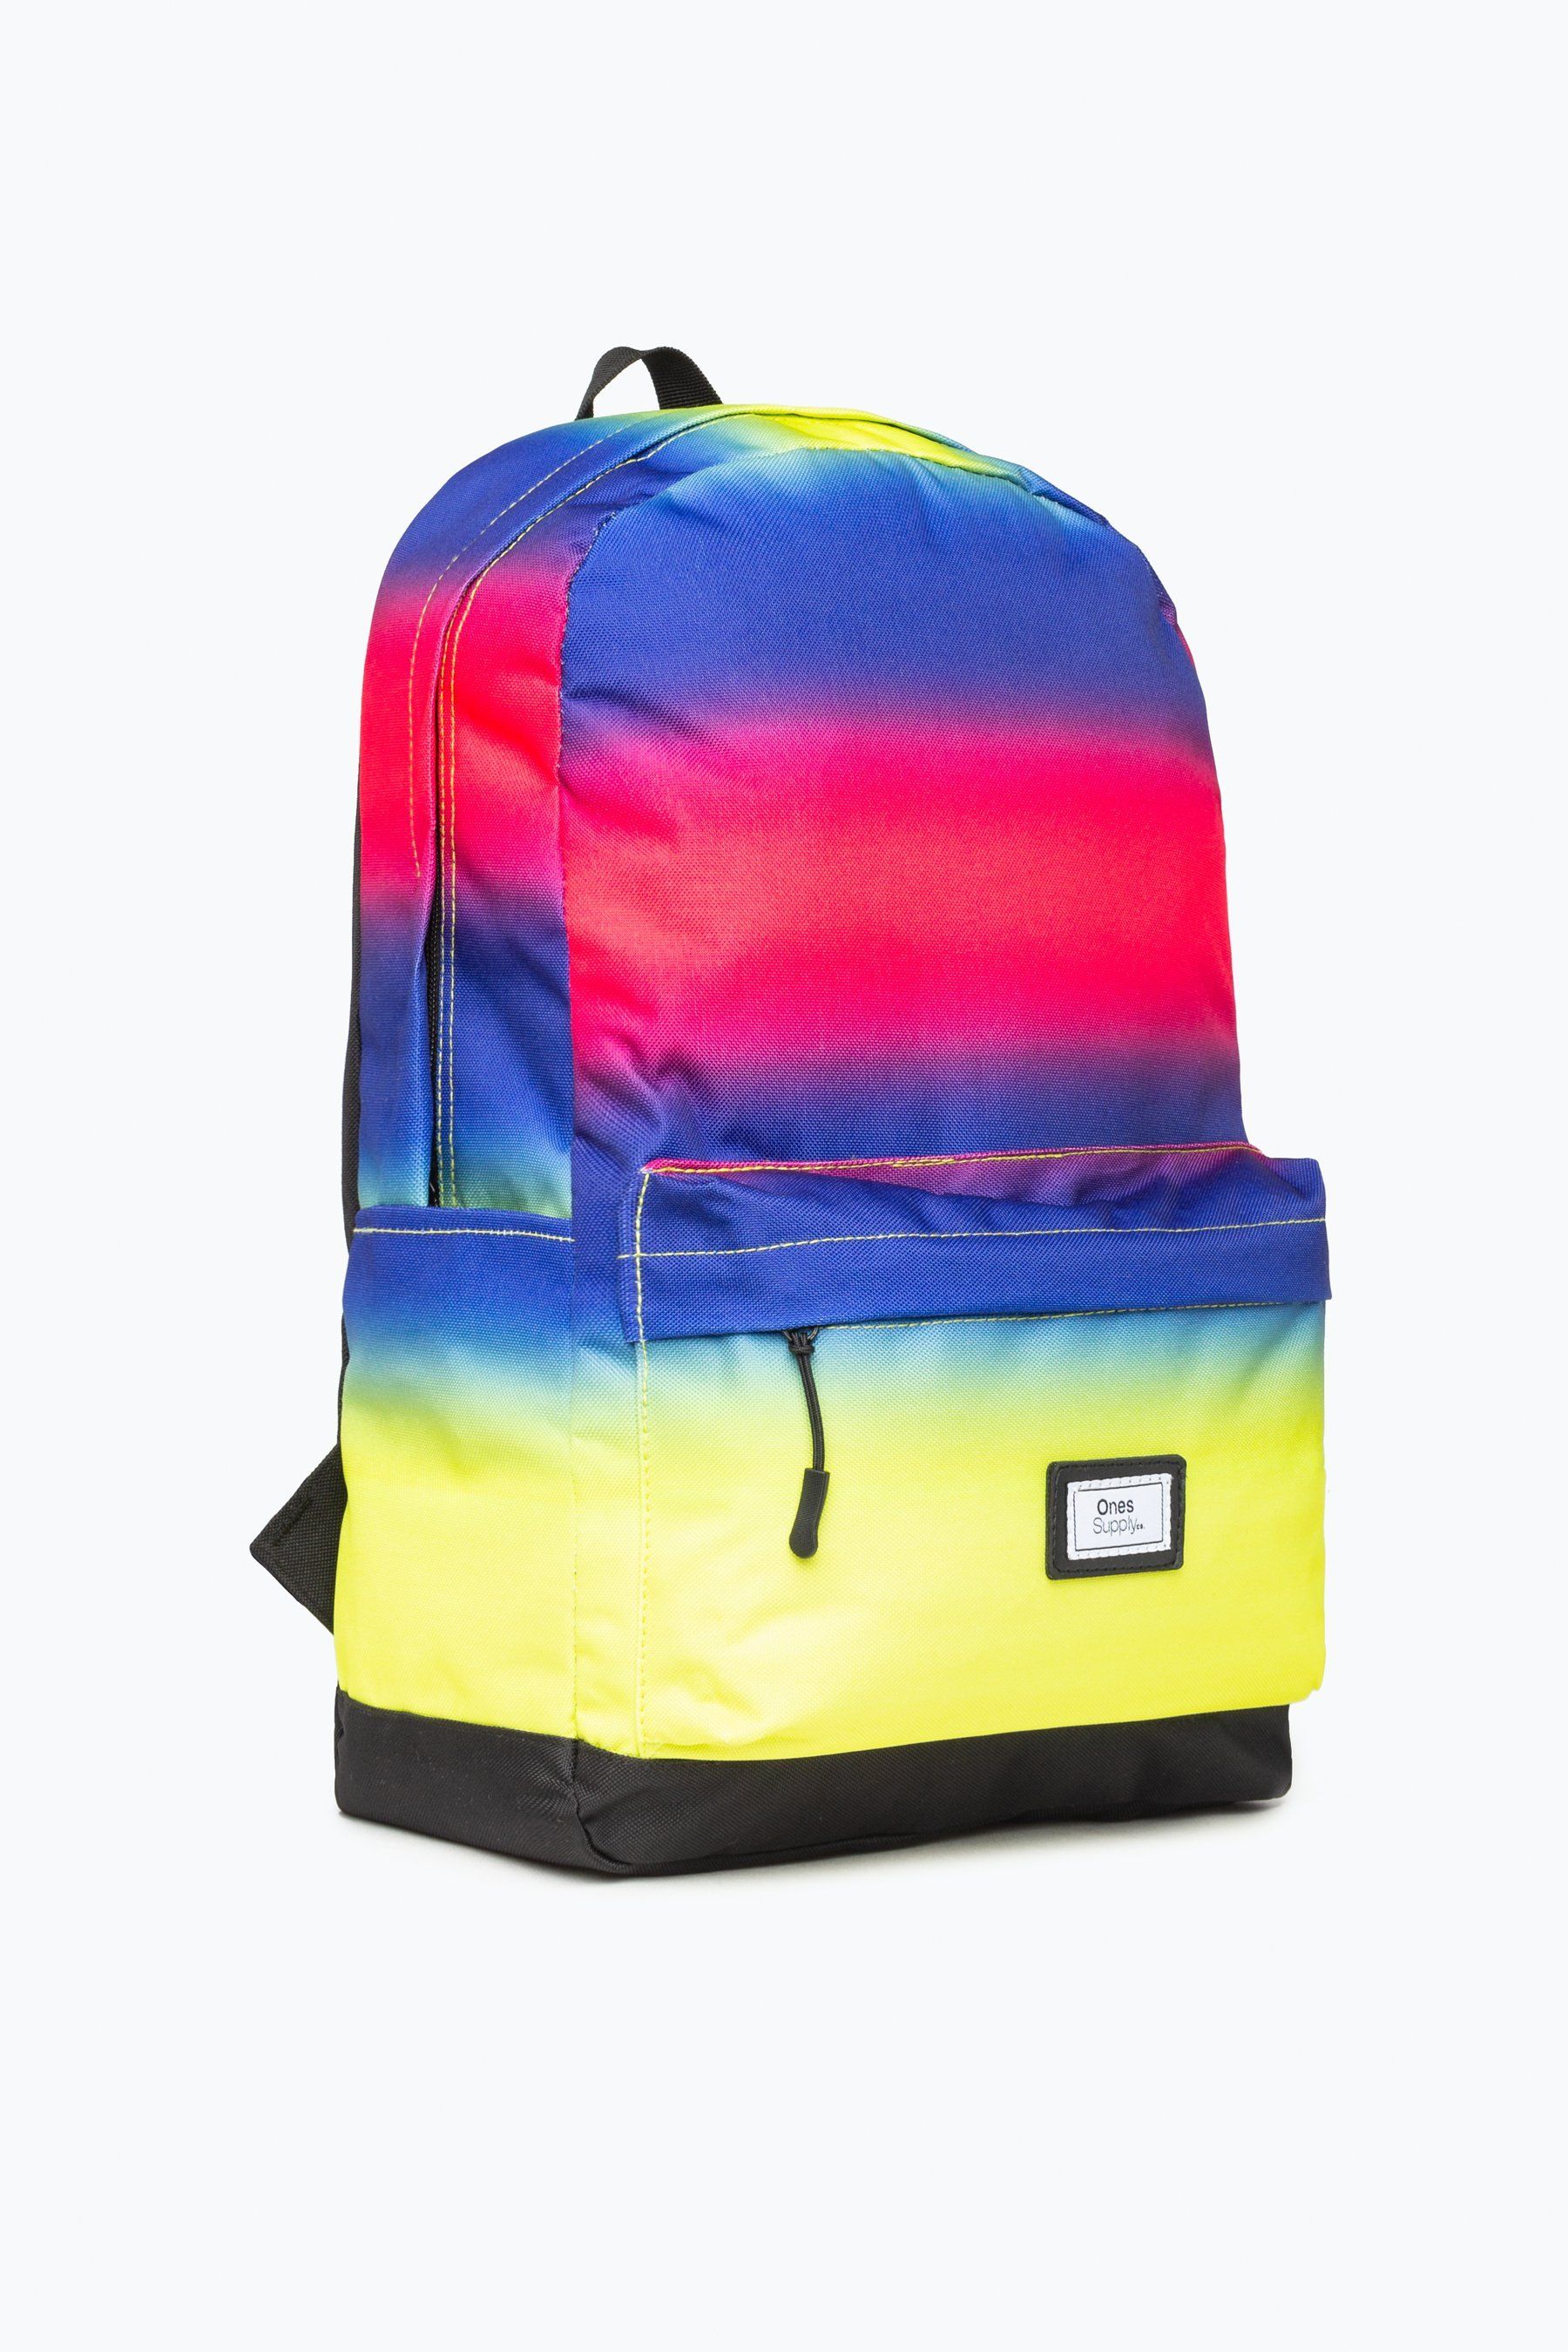 Crazy Fade Fade Core Backpack